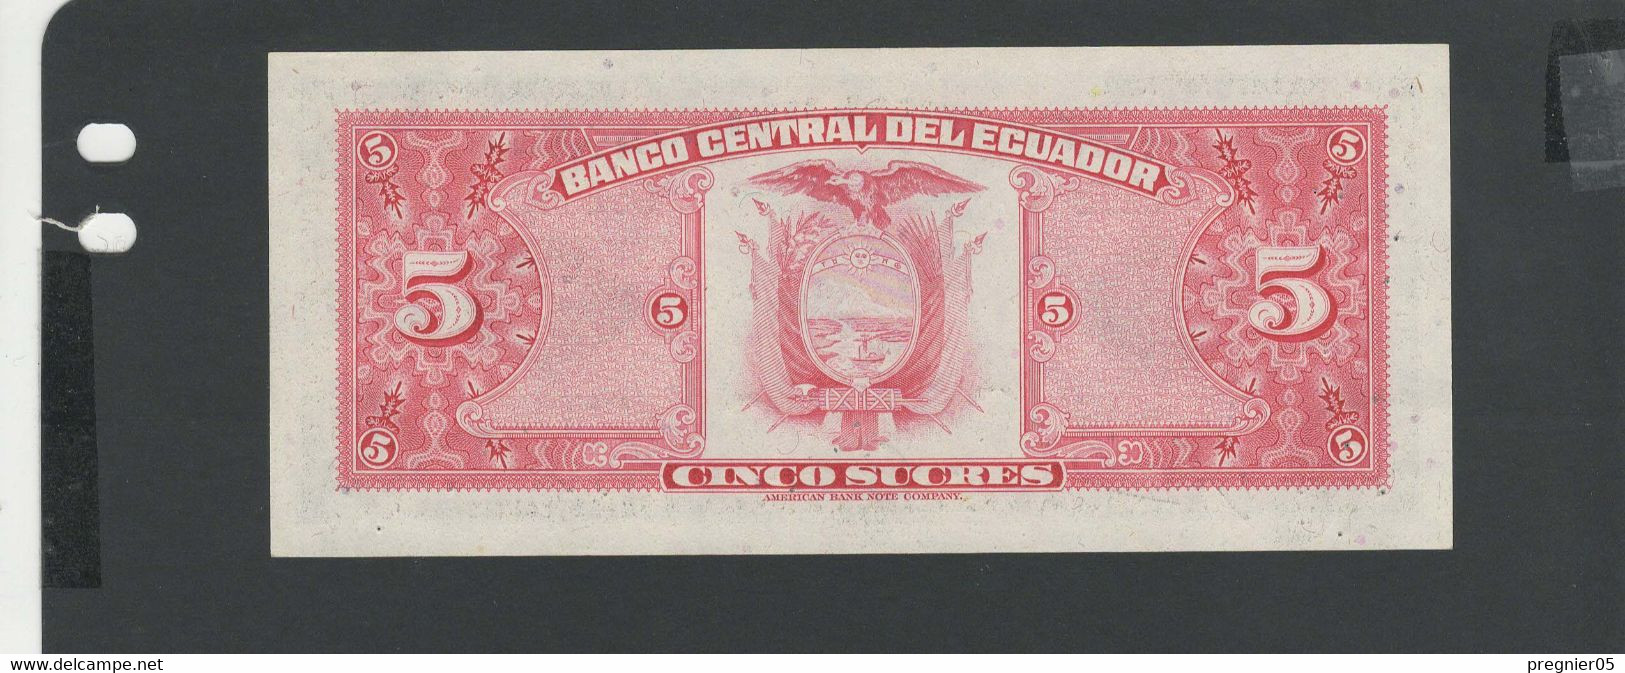 EQUATEUR - Billet 5 Sucres 1977 NEUF/UNC Gad.108 - Equateur